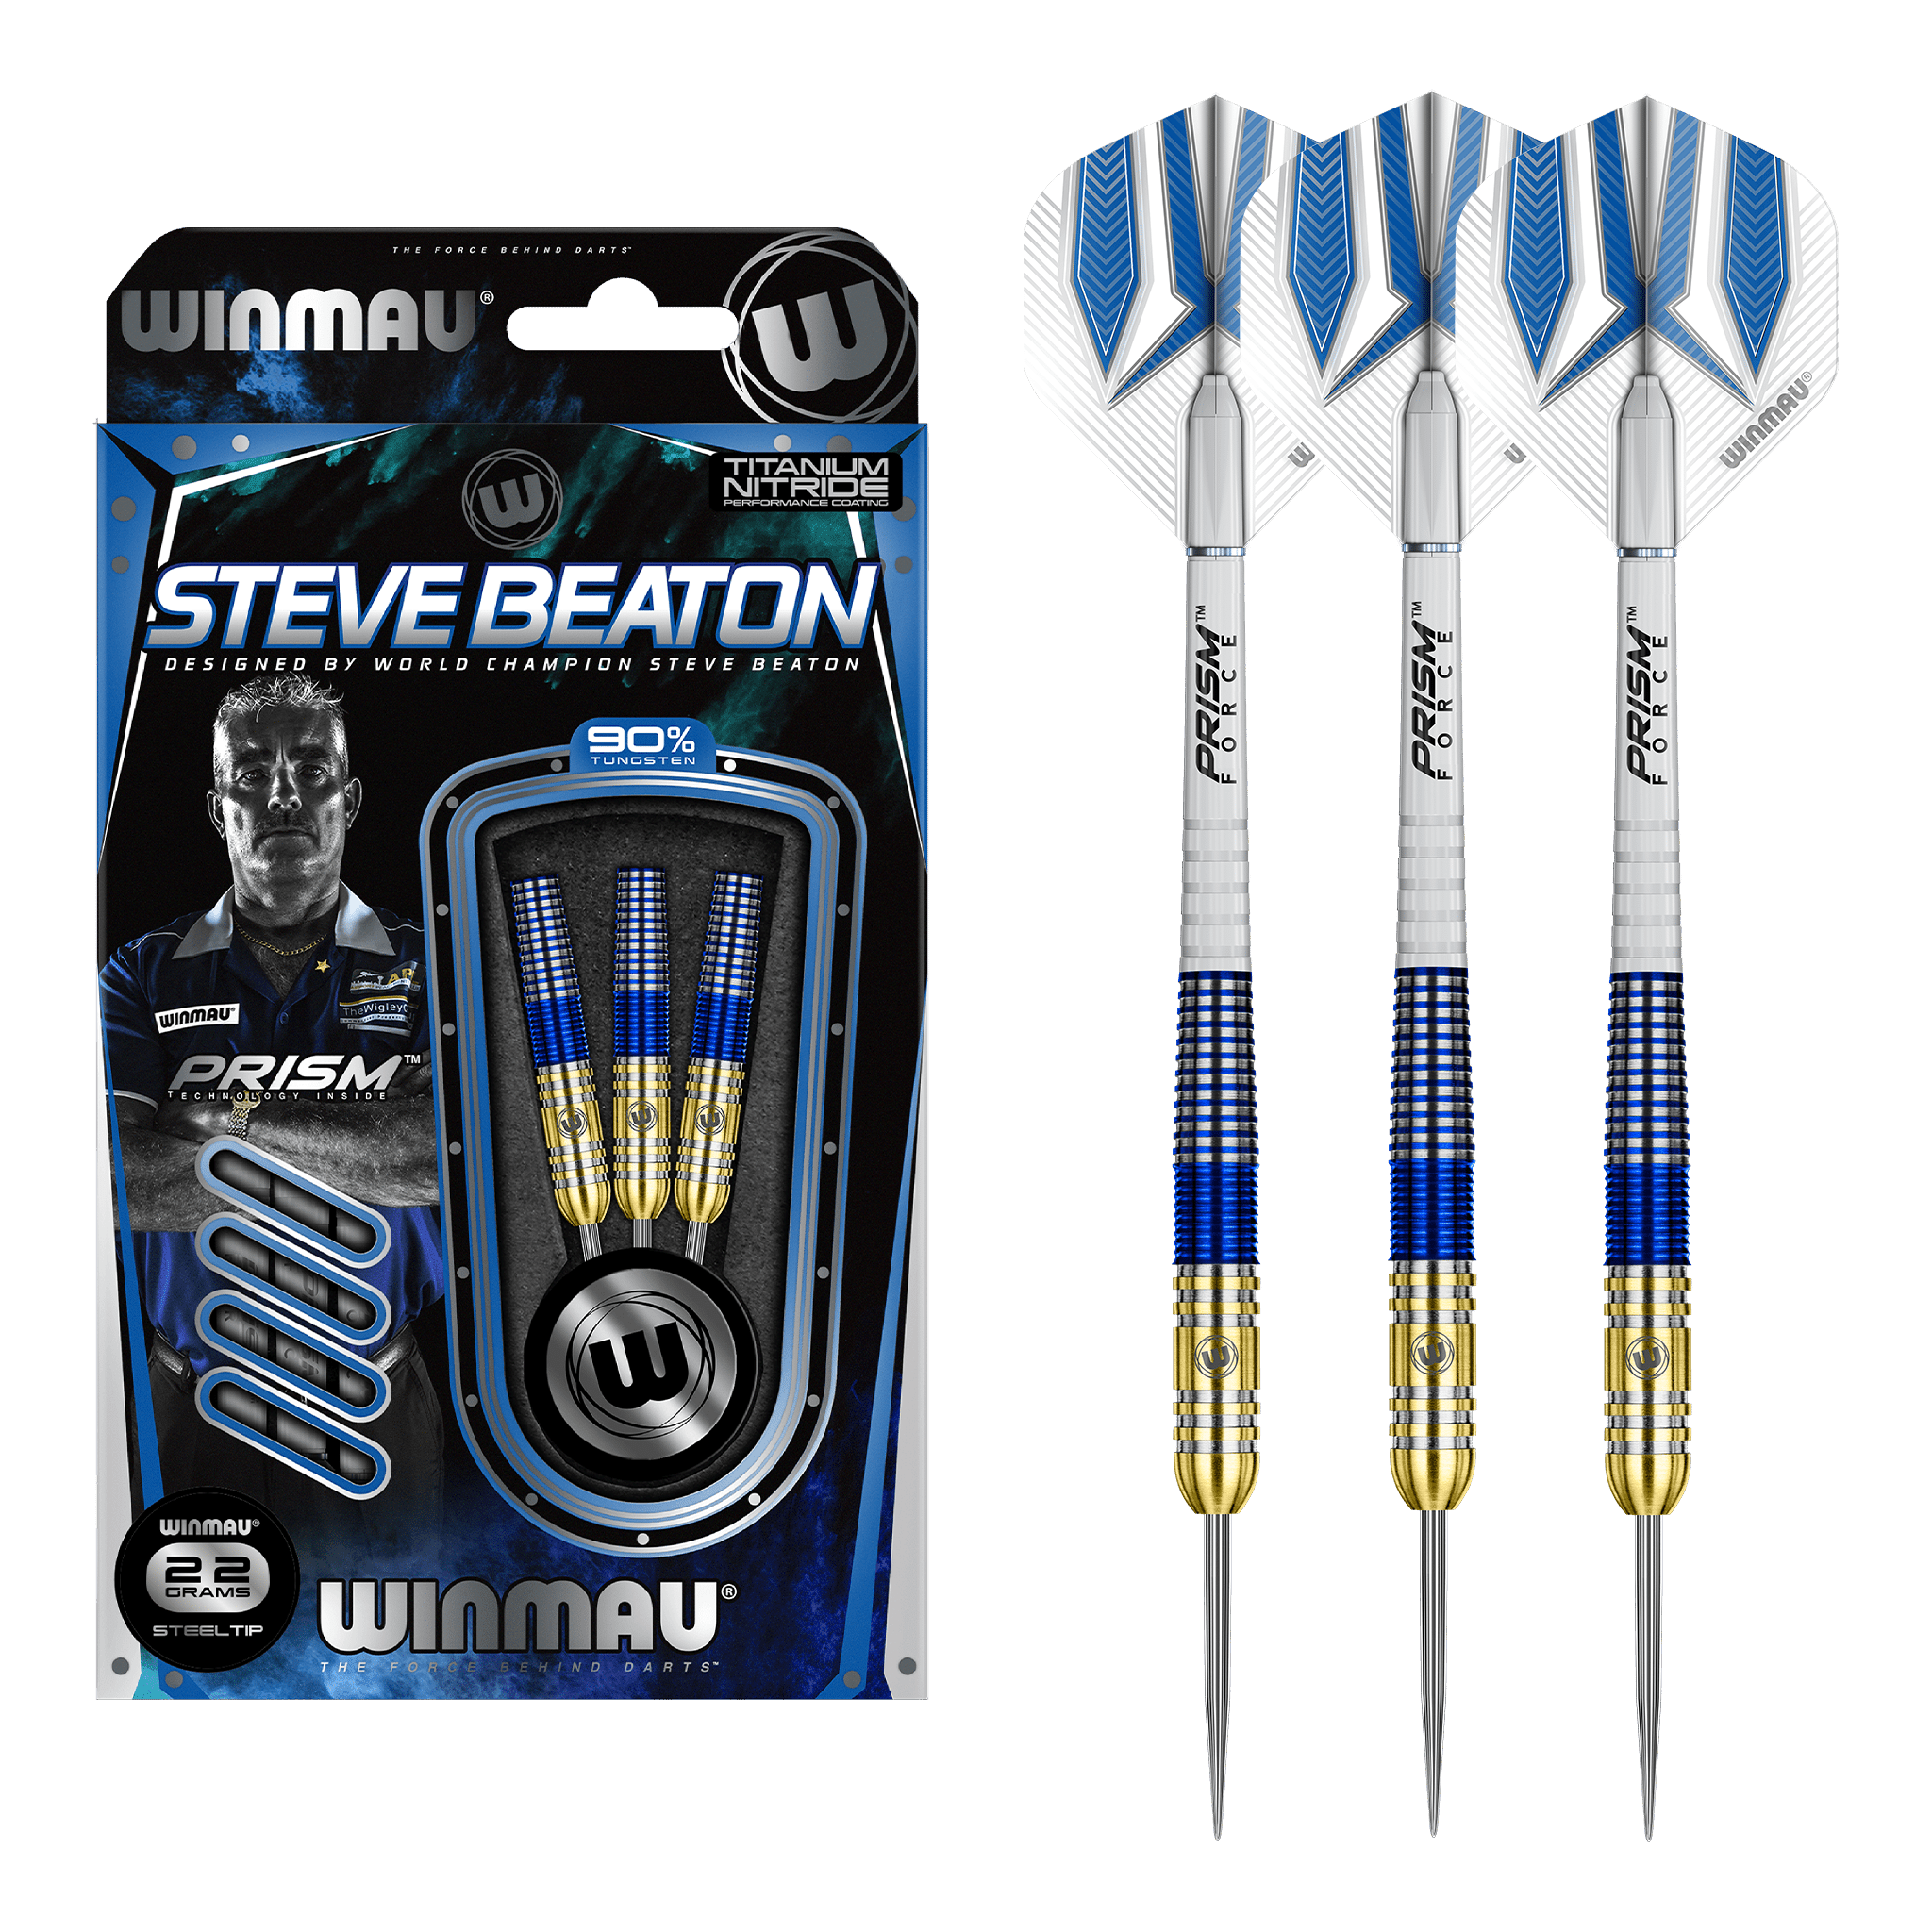 Winmau Steve Beaton Steel Tip Darts - 90% Tungsten - 22 Grams Darts